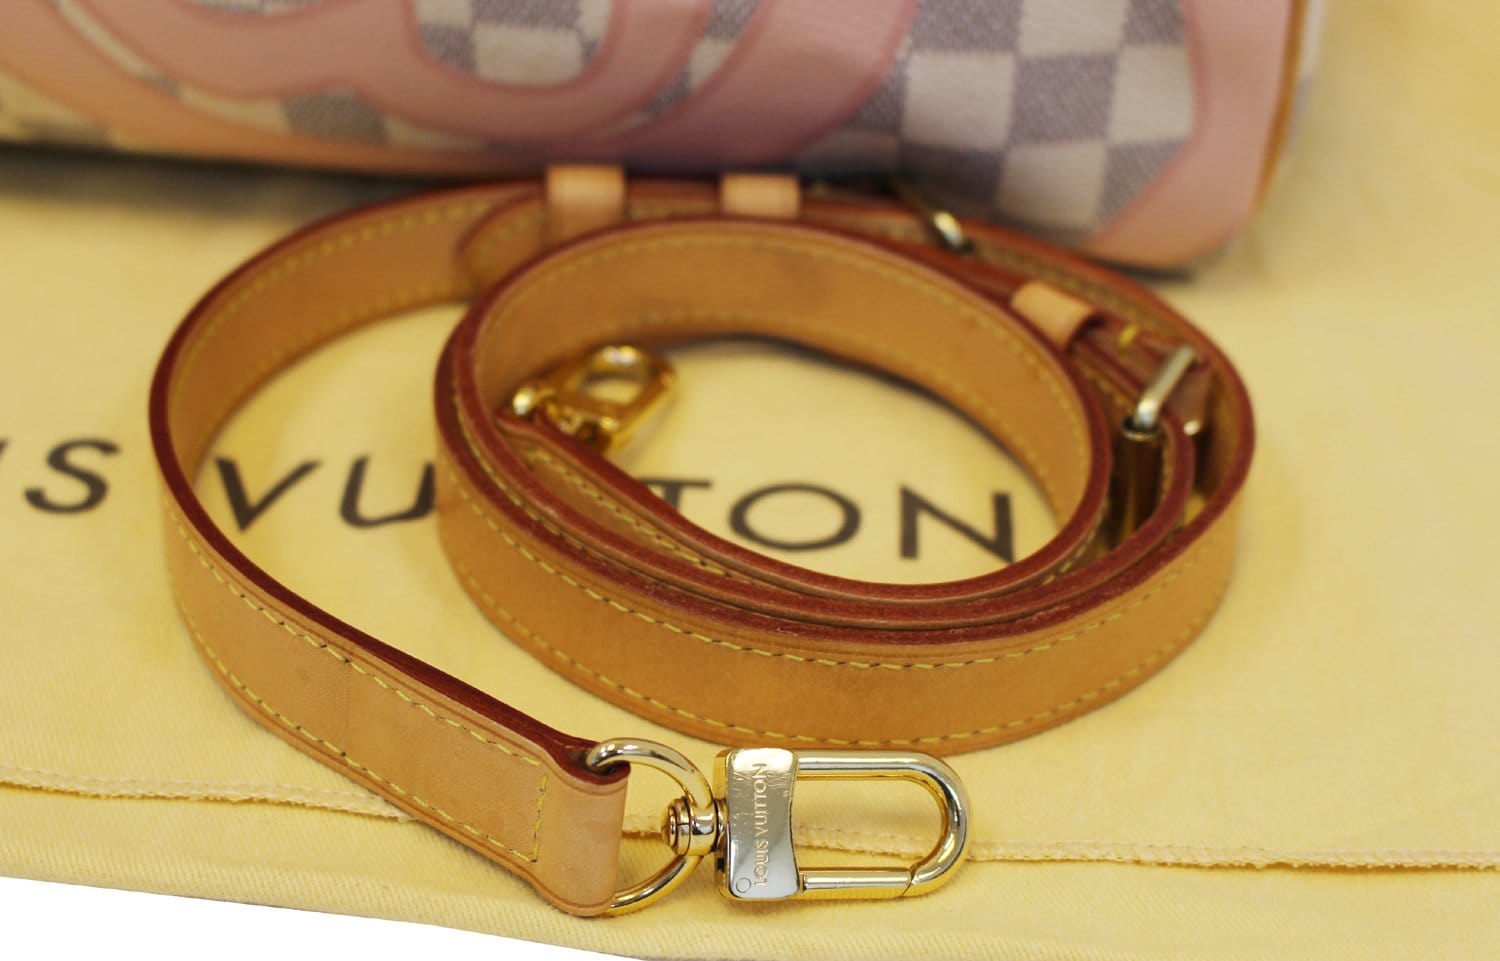 Louis Vuitton Damier Azur Tahitienne Speedy Bandoulière 30 - Handle Bags,  Handbags